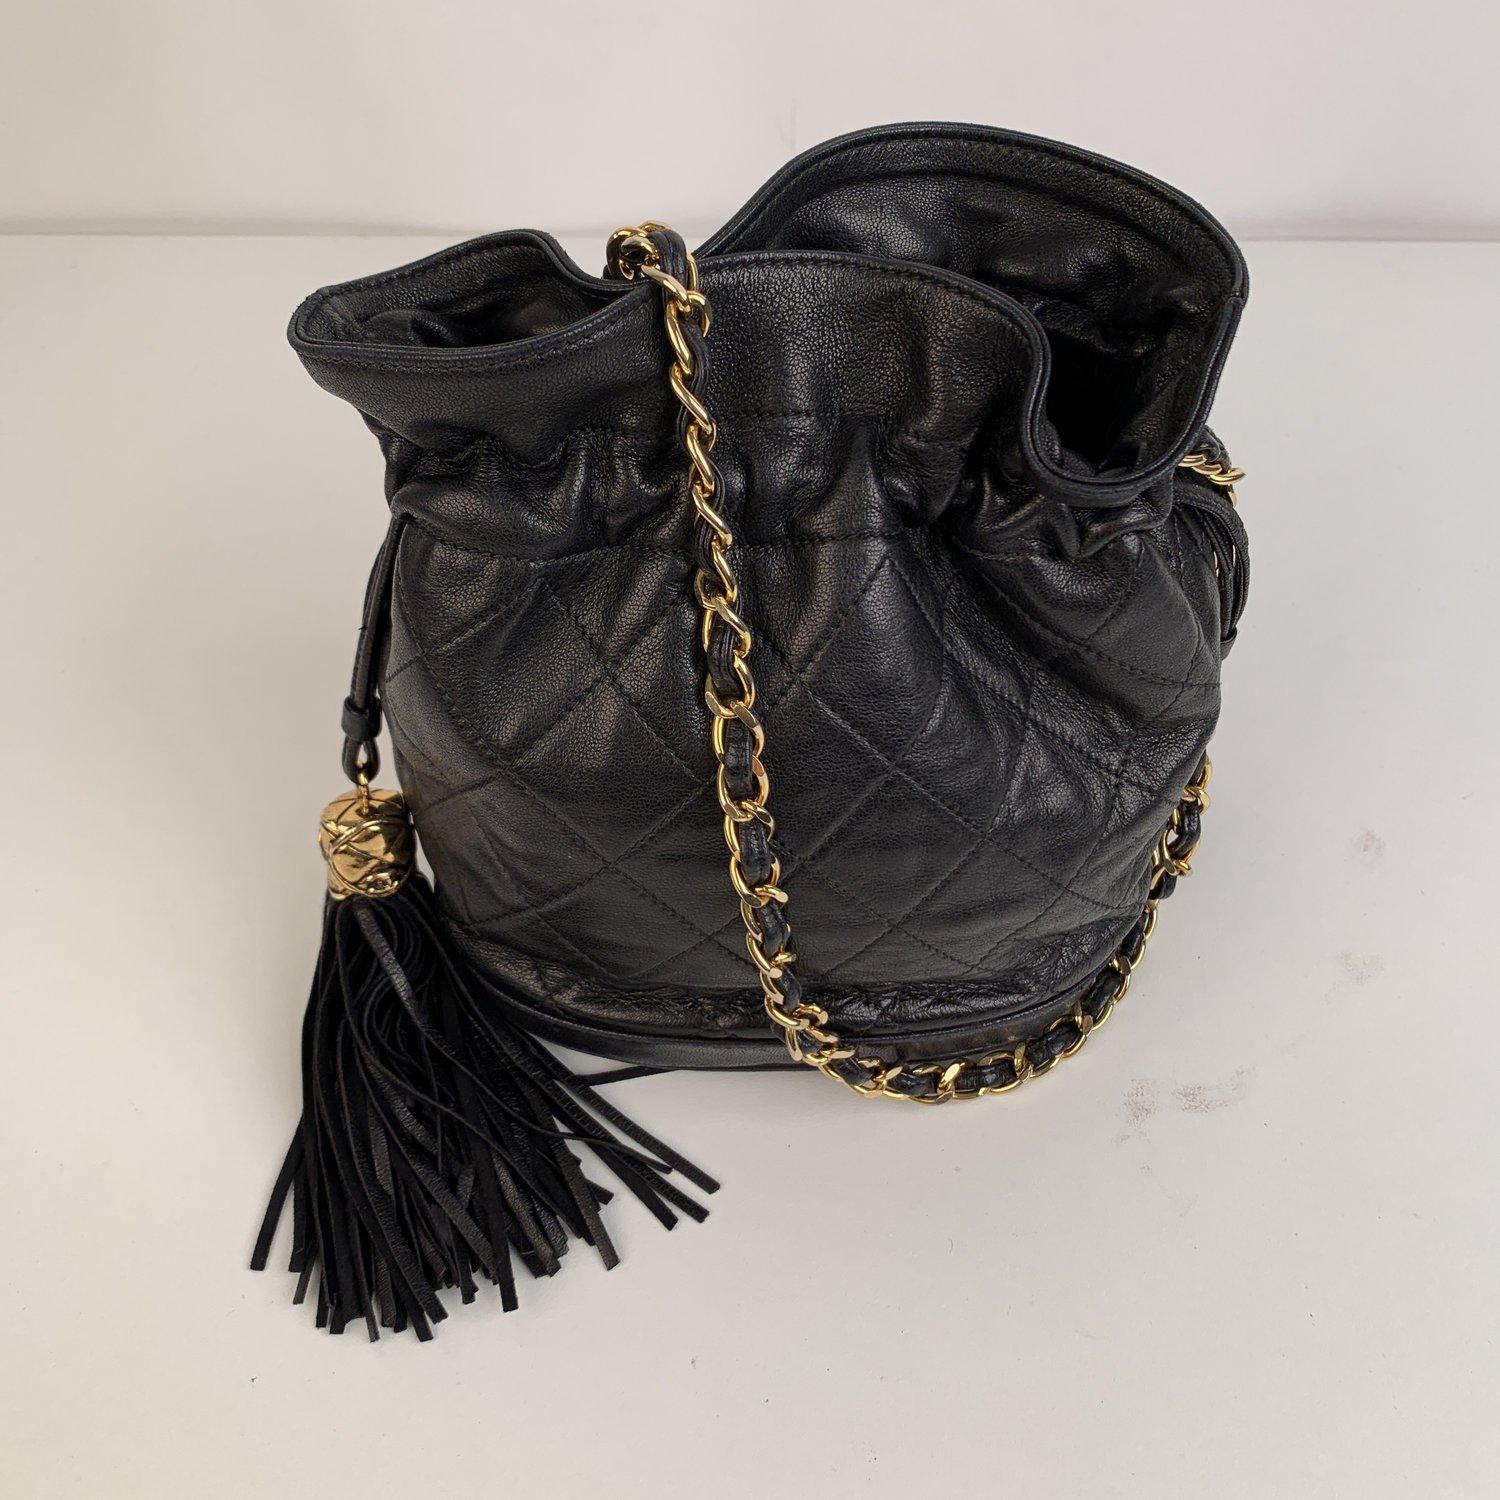 Chanel Vintage Black Quilted Leather Bucket Shoulder Bag with Tassels 2